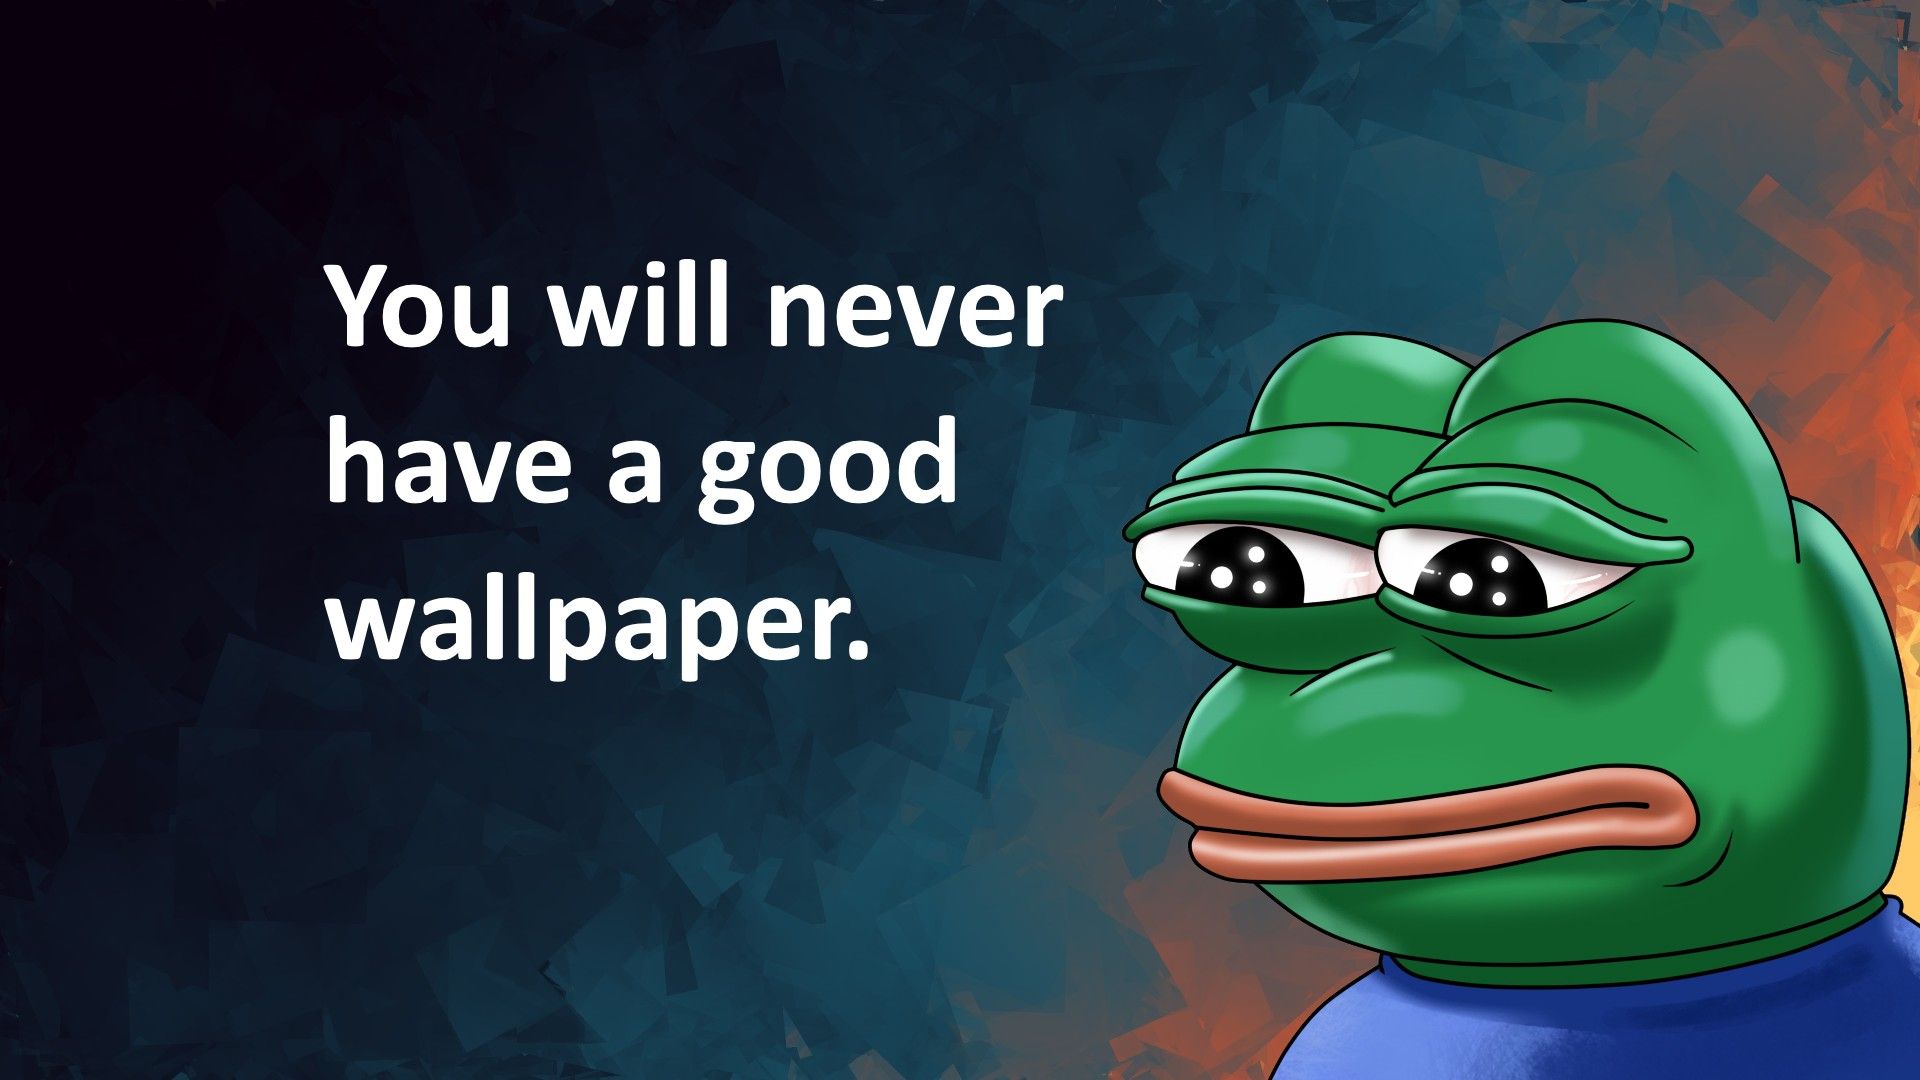 Pepe (meme), FeelsBadMan, Memes, Humor Wallpaper HD / Desktop and Mobile Background